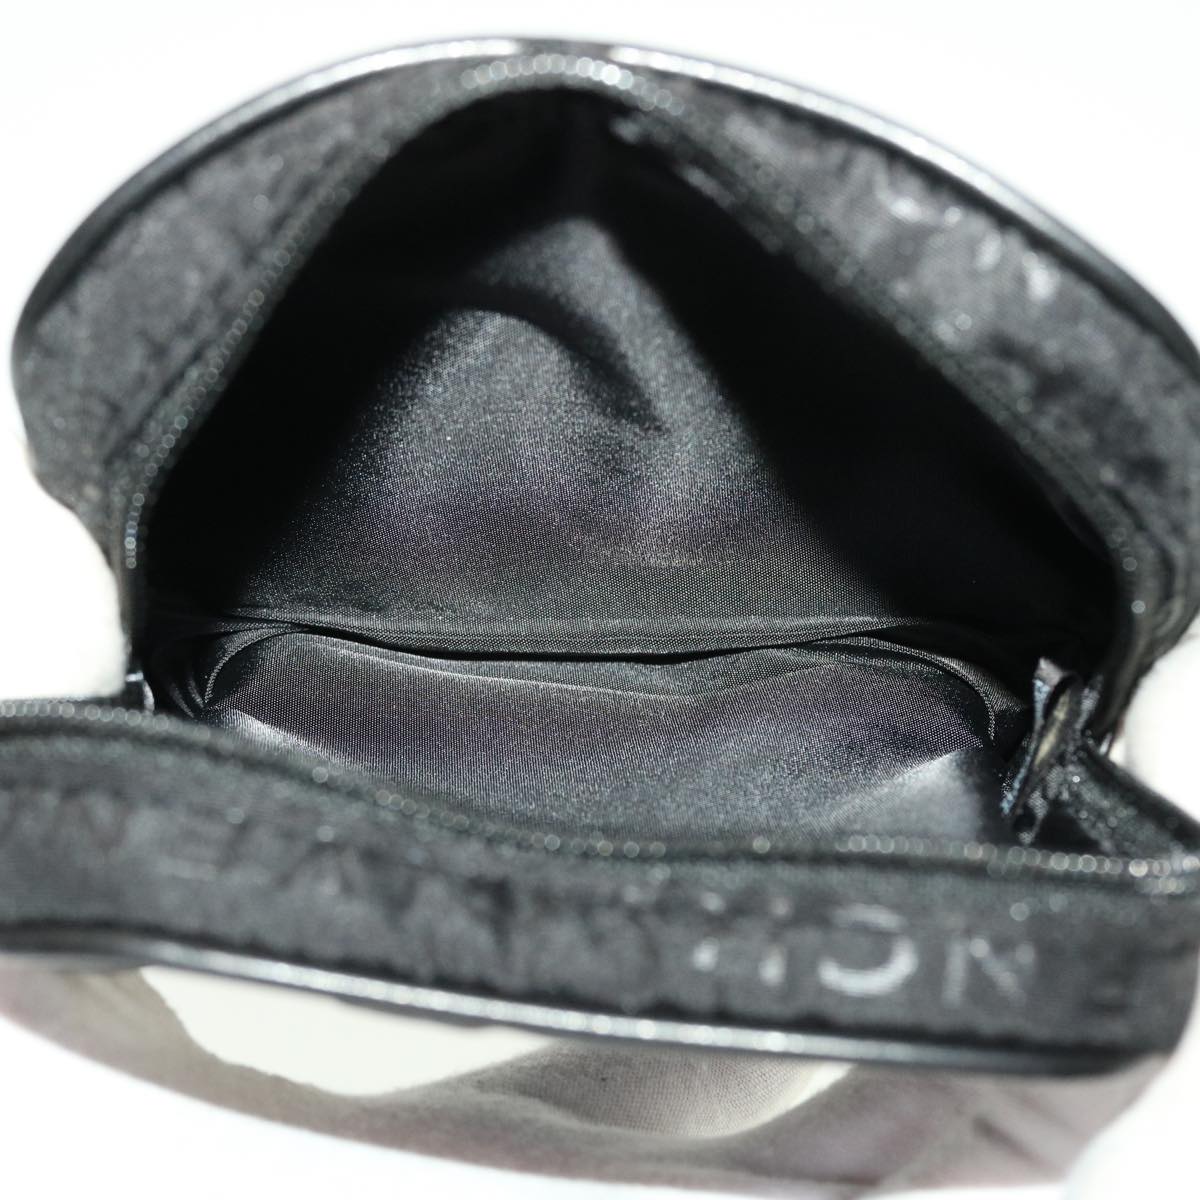 GIVENCHY Shoulder Bag Leather 2Set Black Auth bs5348